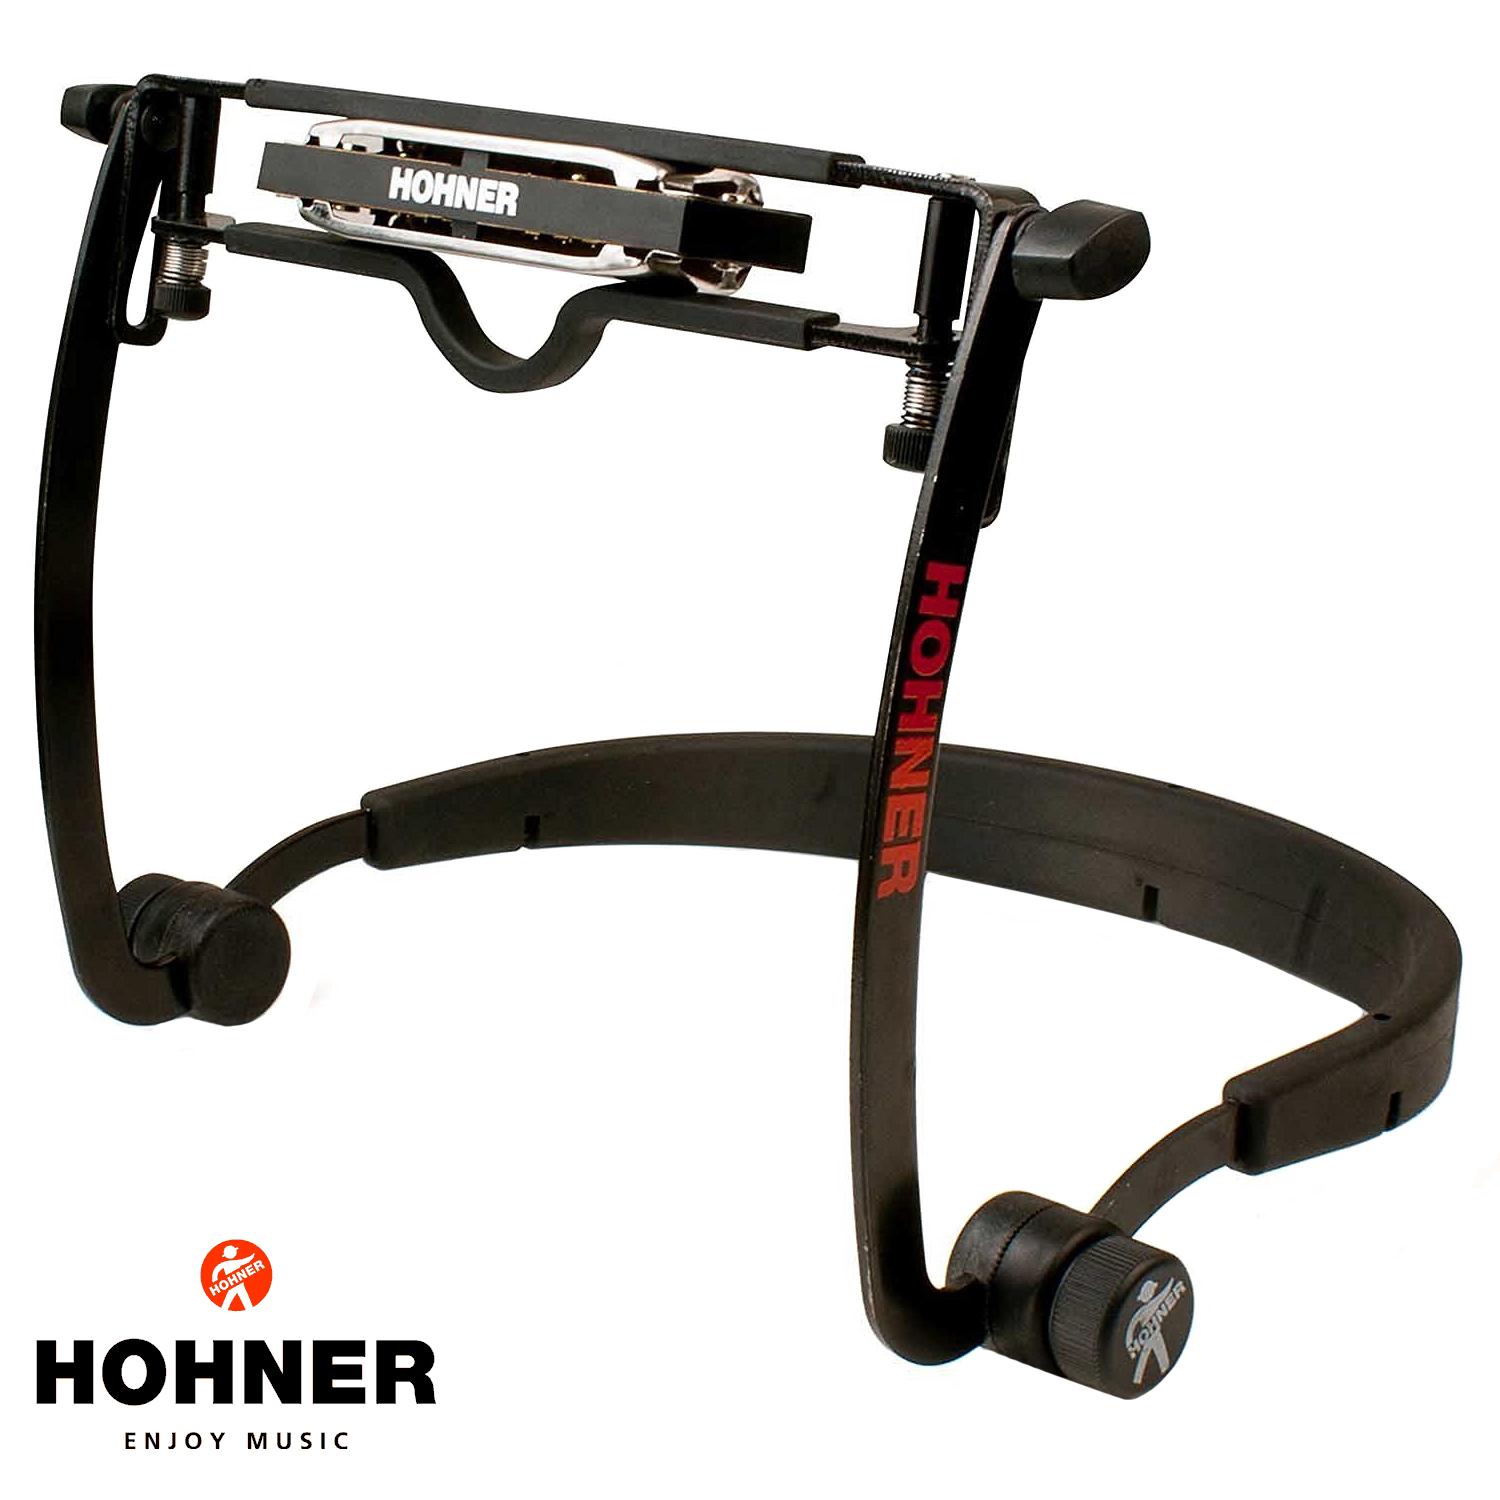 Hohner Flex Rack ตัวจับฮาร์โมนิก้า ระดับมืออาชีพ รุ่น MZ 2010  (ขาหนีบเมาท์ออร์แกน, ขาหนีบฮาร์โมนิก้า, Harmonica Holder)